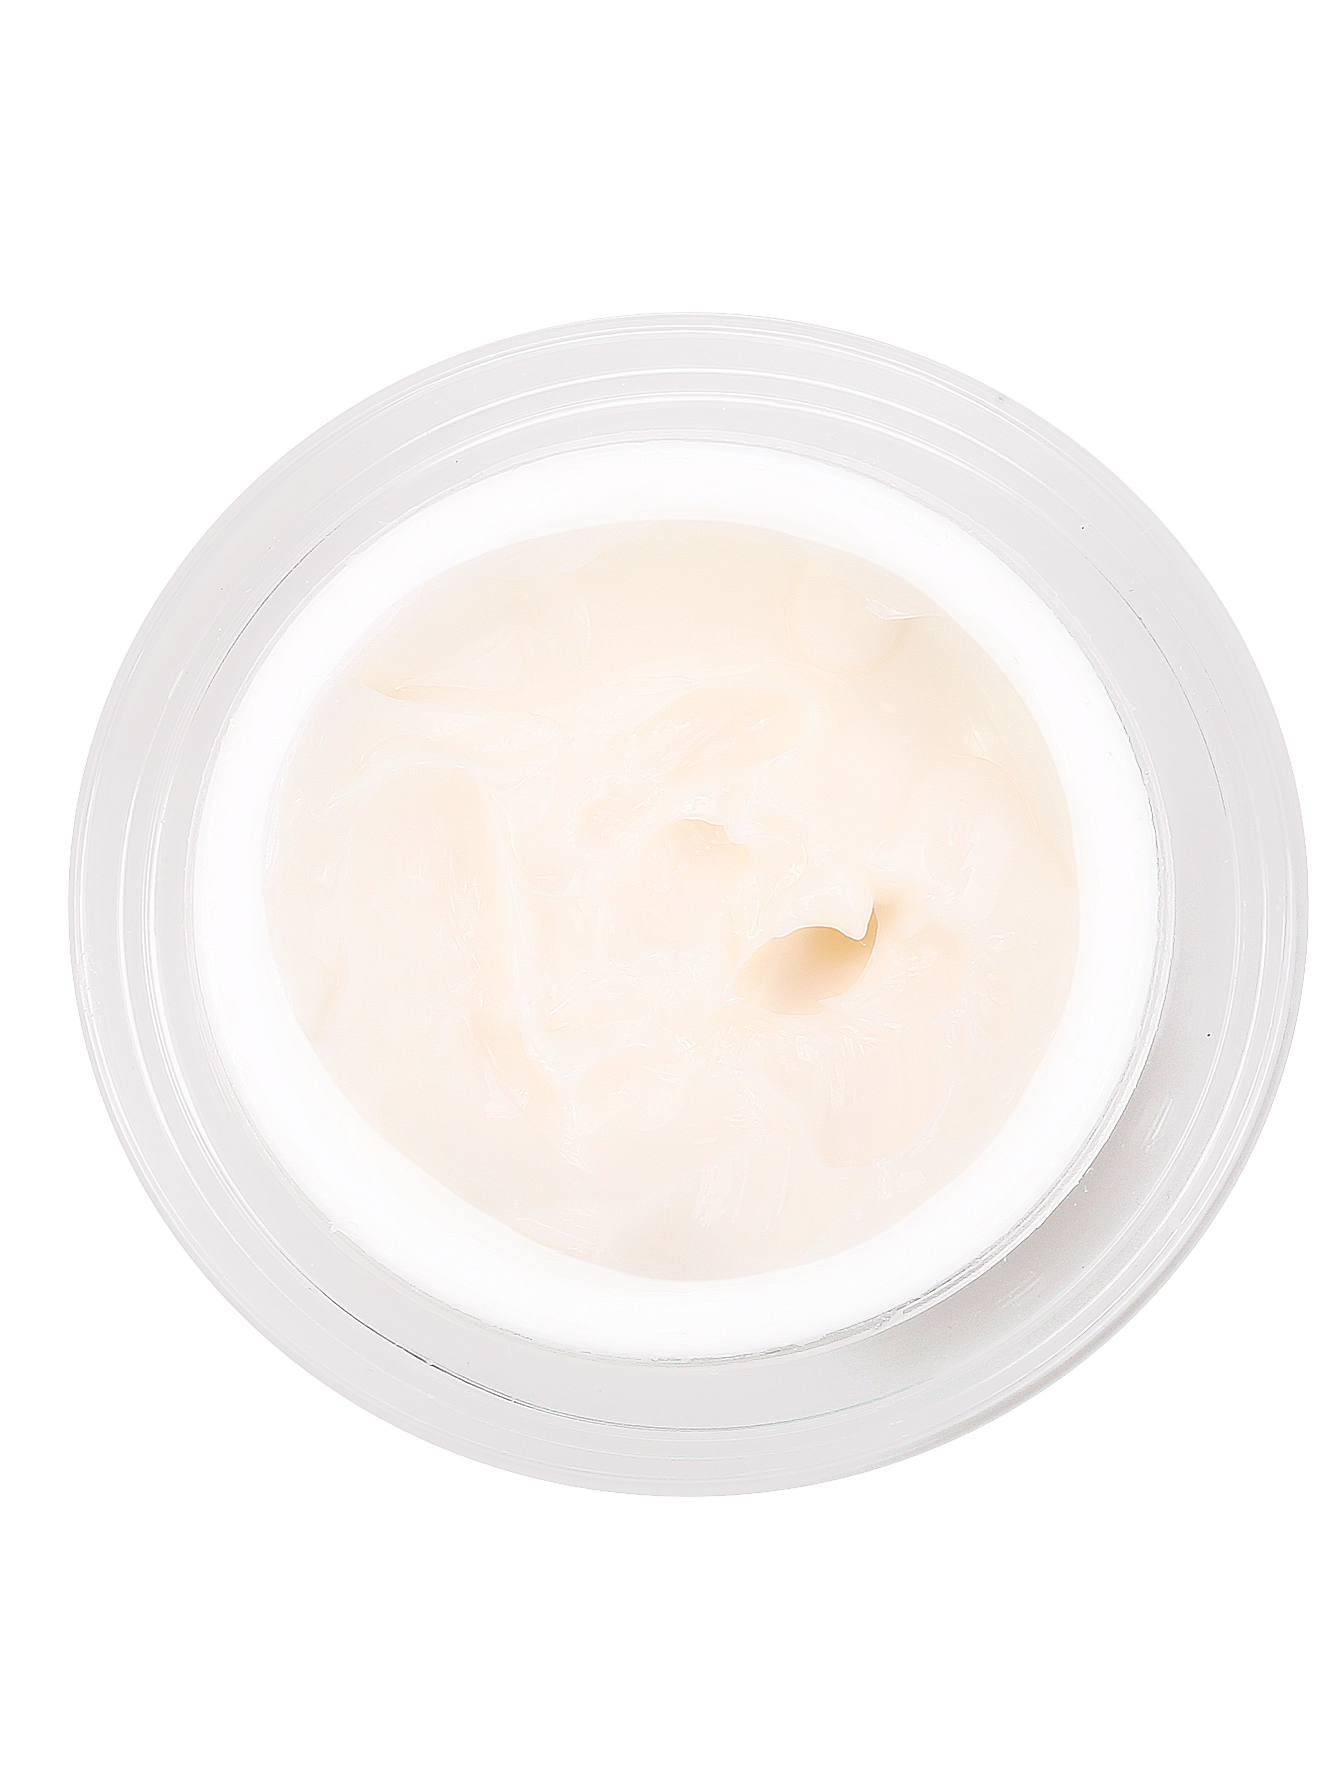 Крем для глаз и губ - Countour cream, 15ml - Модель Верх-Низ